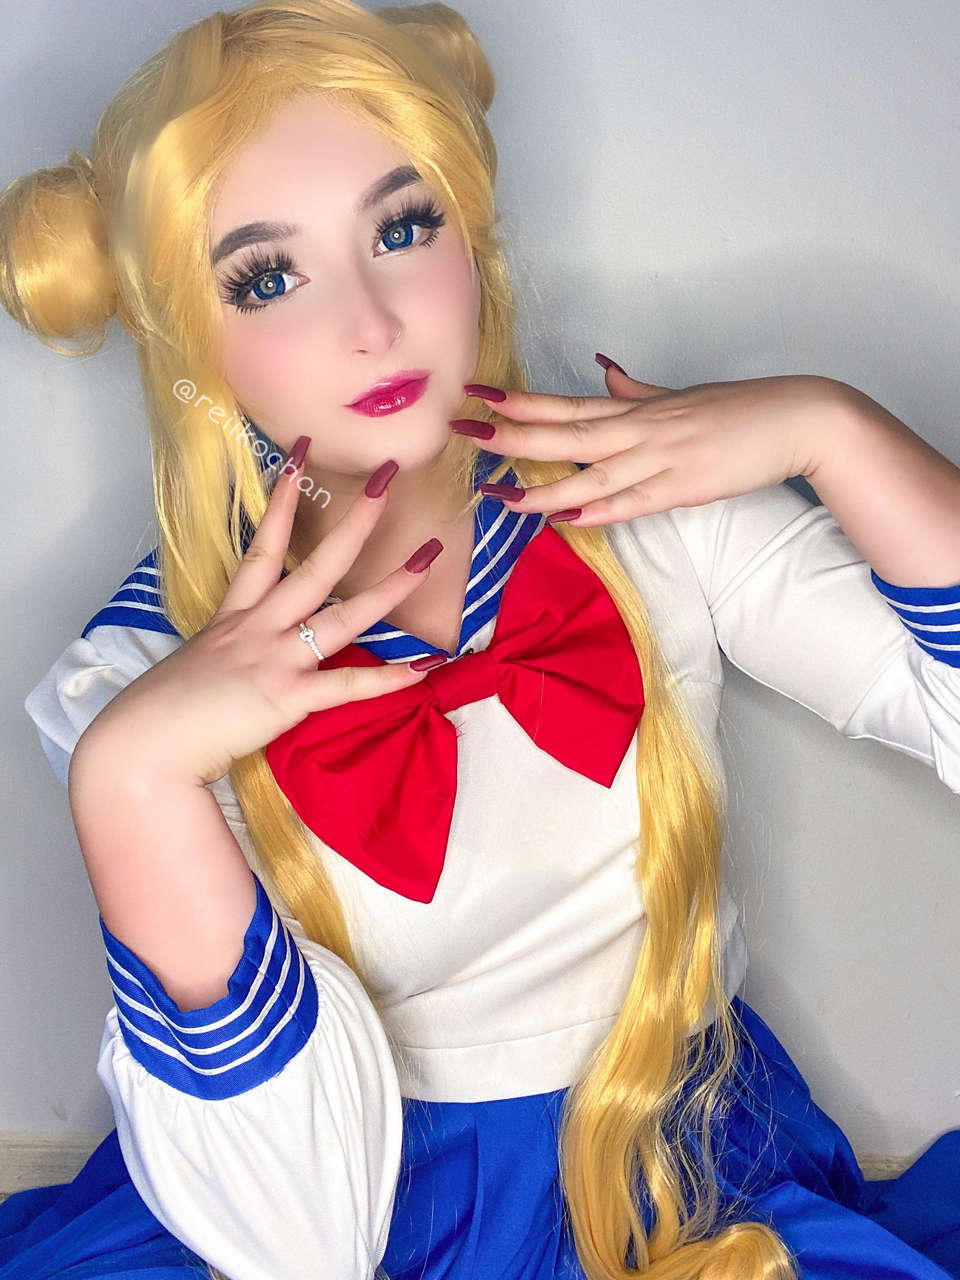 Sailormoo